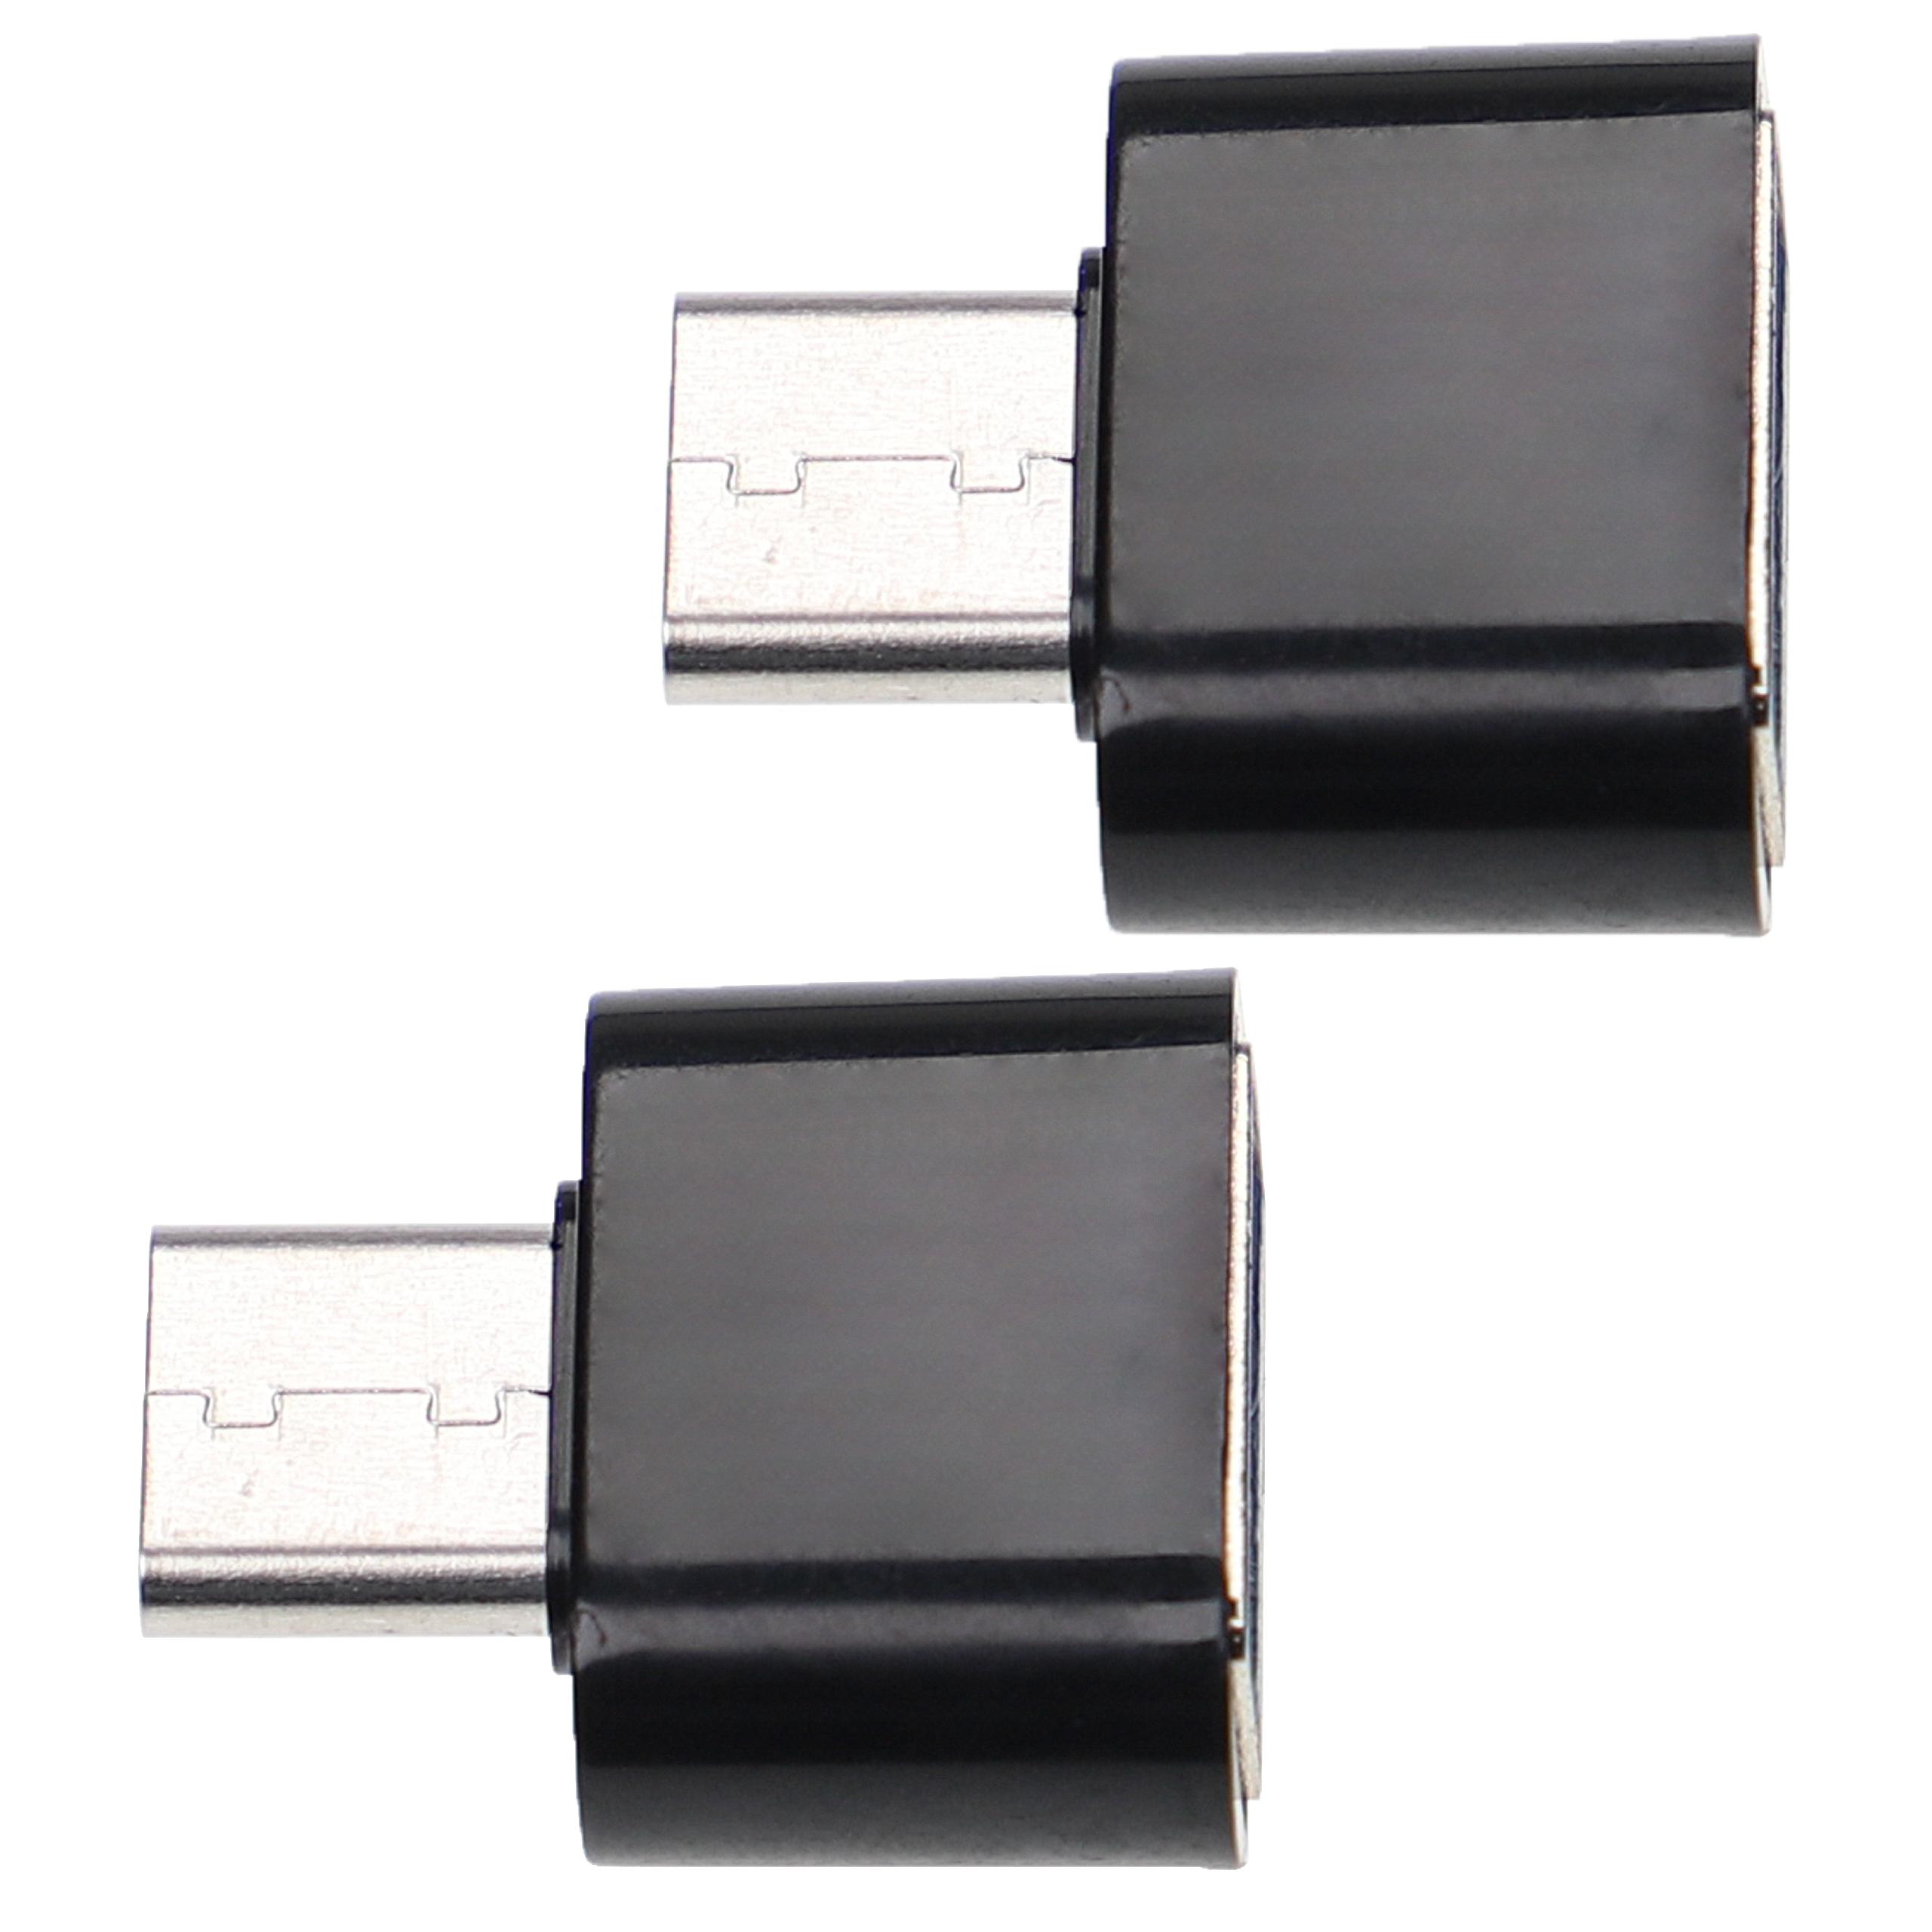 2x Adapter USB C (m) na USB 3.0 (ż) do smartfona, tabletu, laptopa - Adapter USB